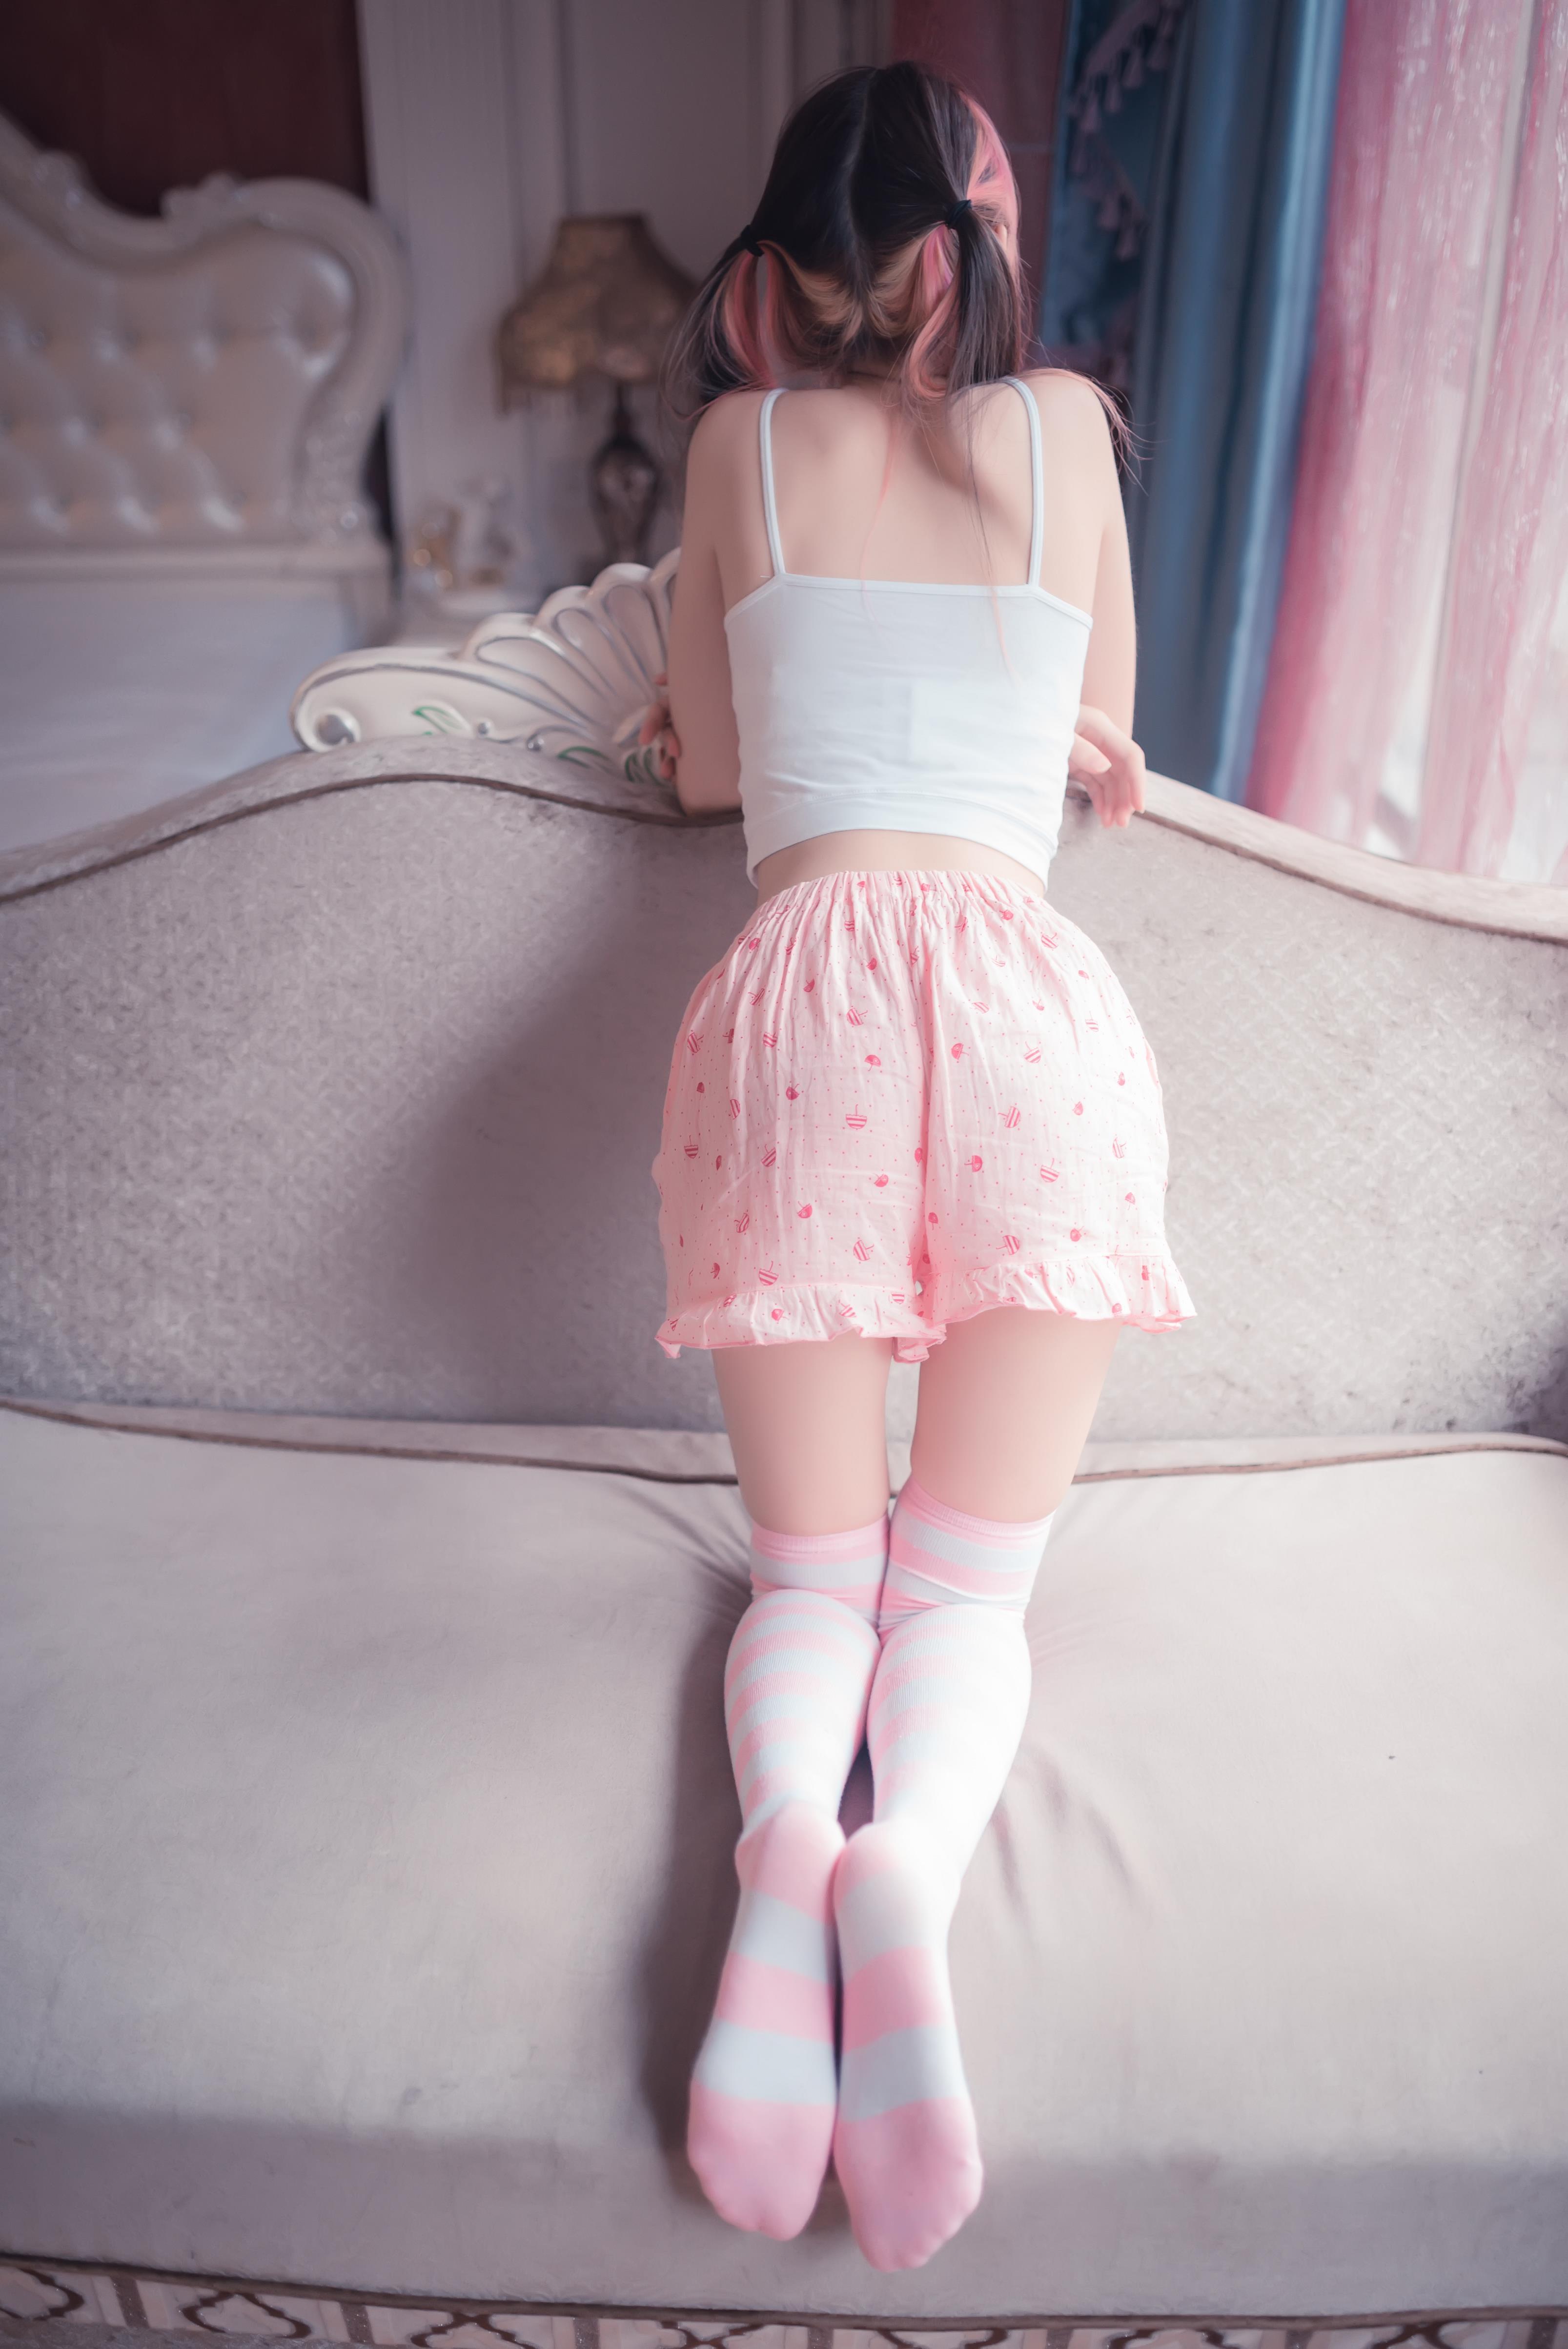 [风之领域]NO.025 性感小萝莉白色小背心与粉色短裤加丝袜美腿私房写真集,